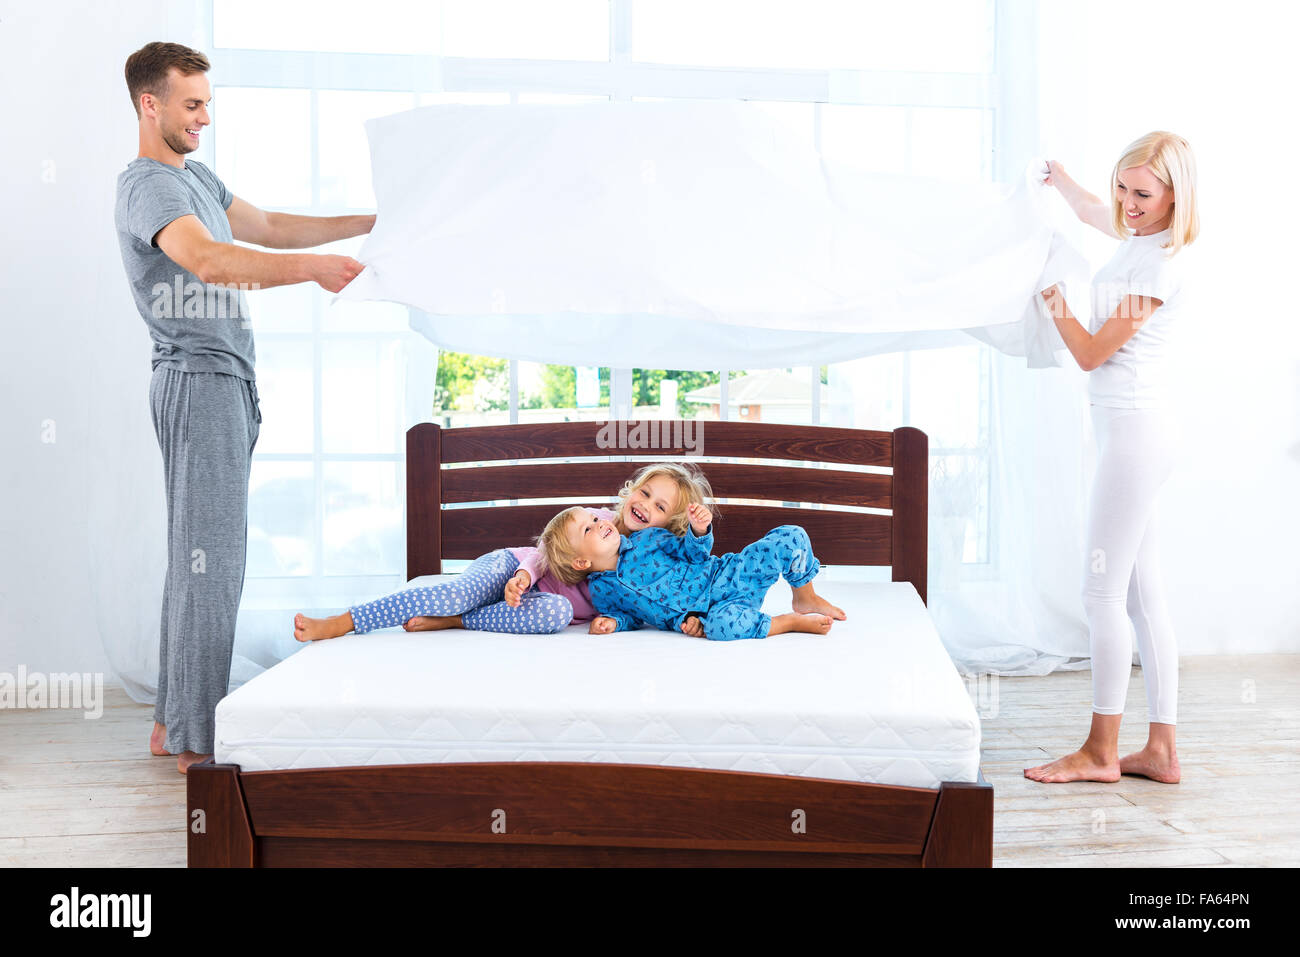 Junge nette Familie Bett machen Stockfoto